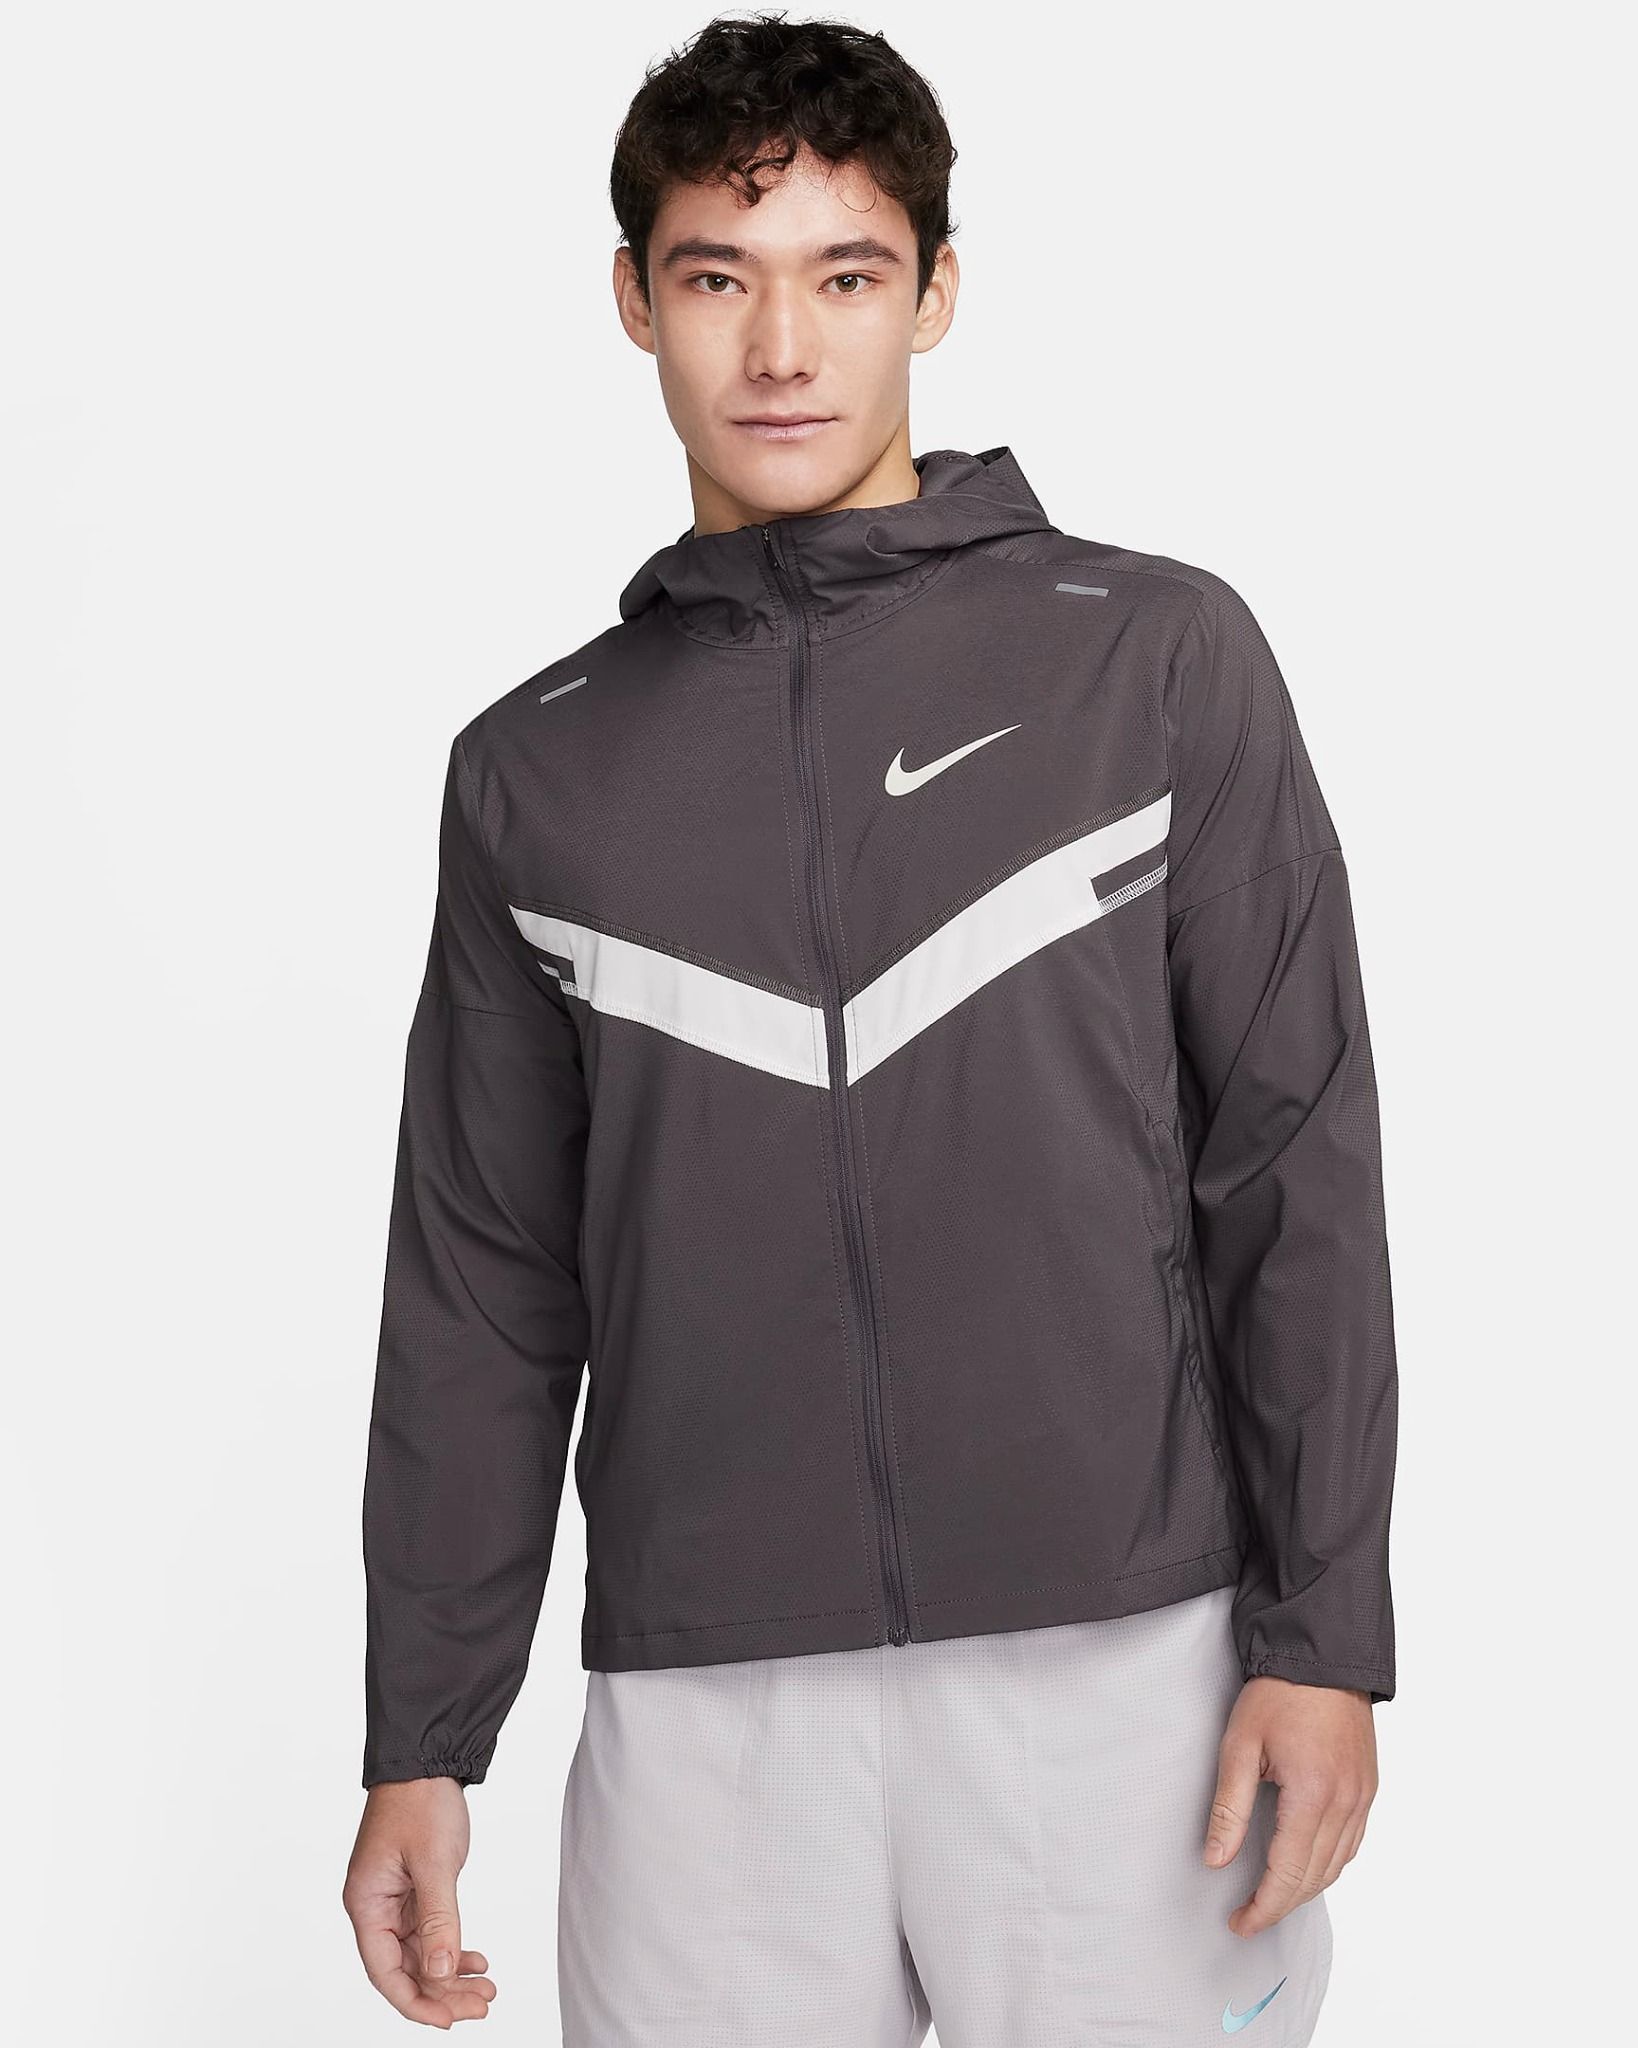 Nike - Áo khoác thể thao Nam Repel Windrunner Men's UV Running Jacket